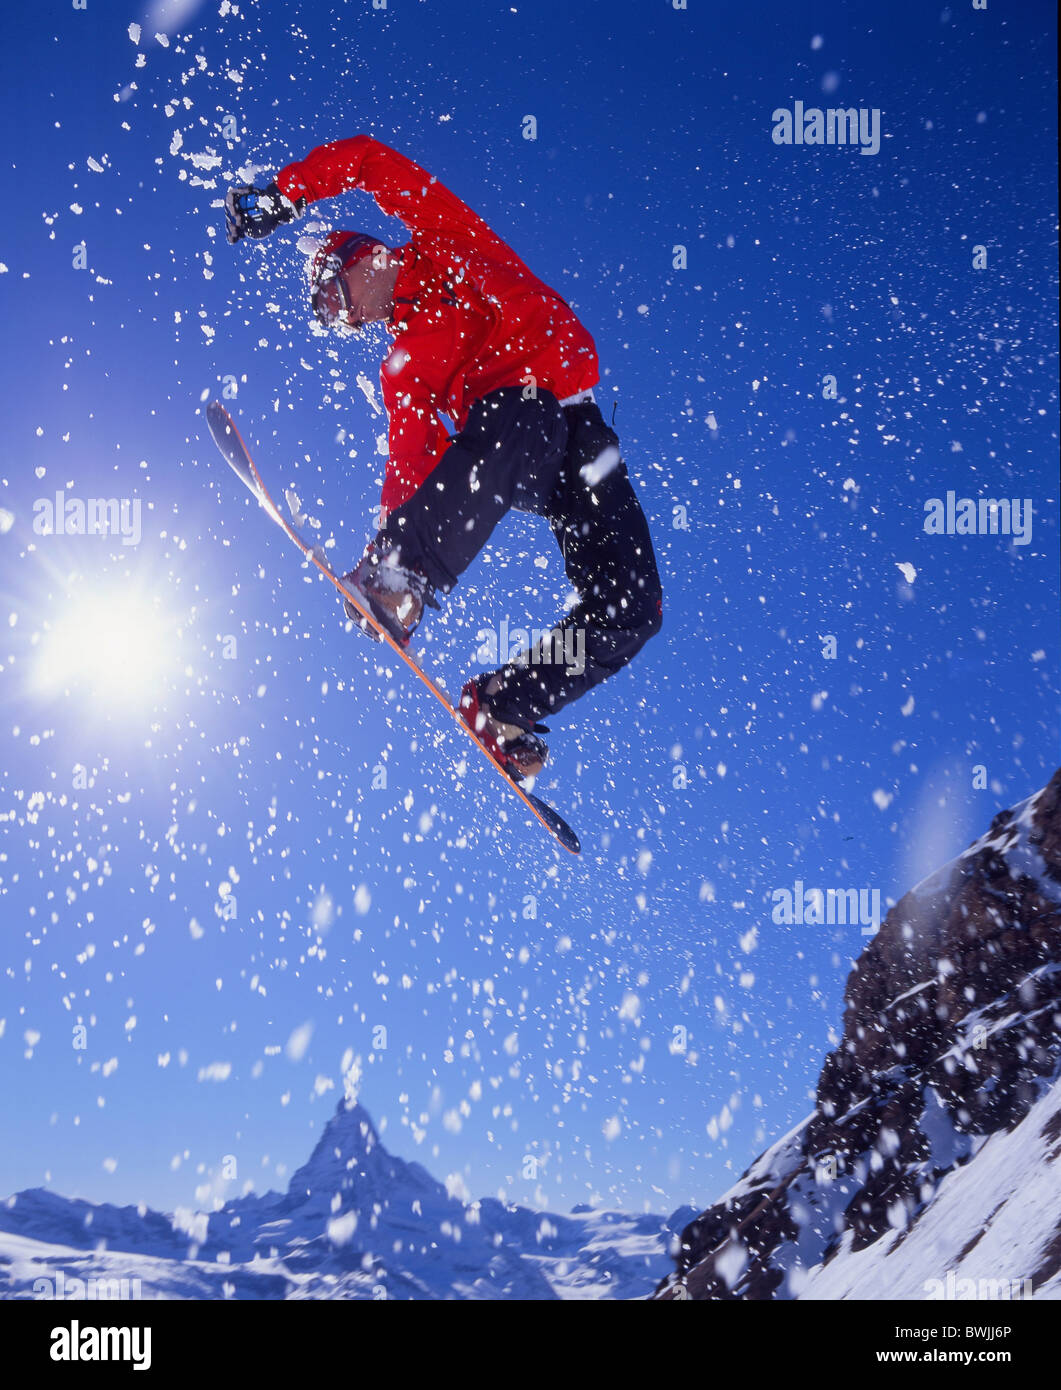 Matterhorn snowboard Snowboarder jump action Snowboarding Snowboard mountains Alps canton Valais winter spor Stock Photo